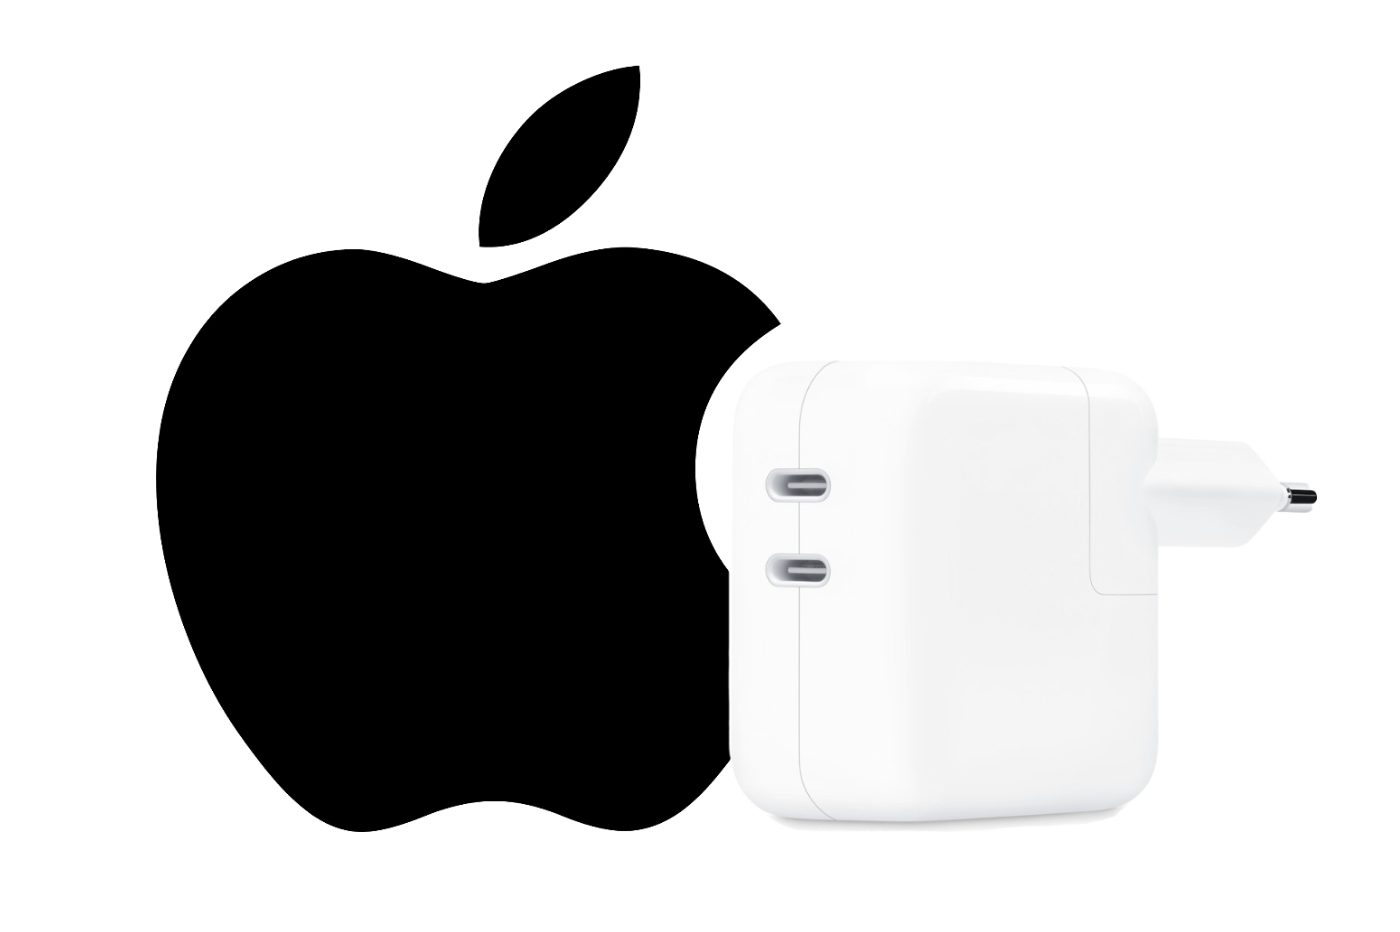 Apple Adaptateur secteur USB 5 W Apple - Chargeur iPhone et smartphone -  Chargeur - Apple